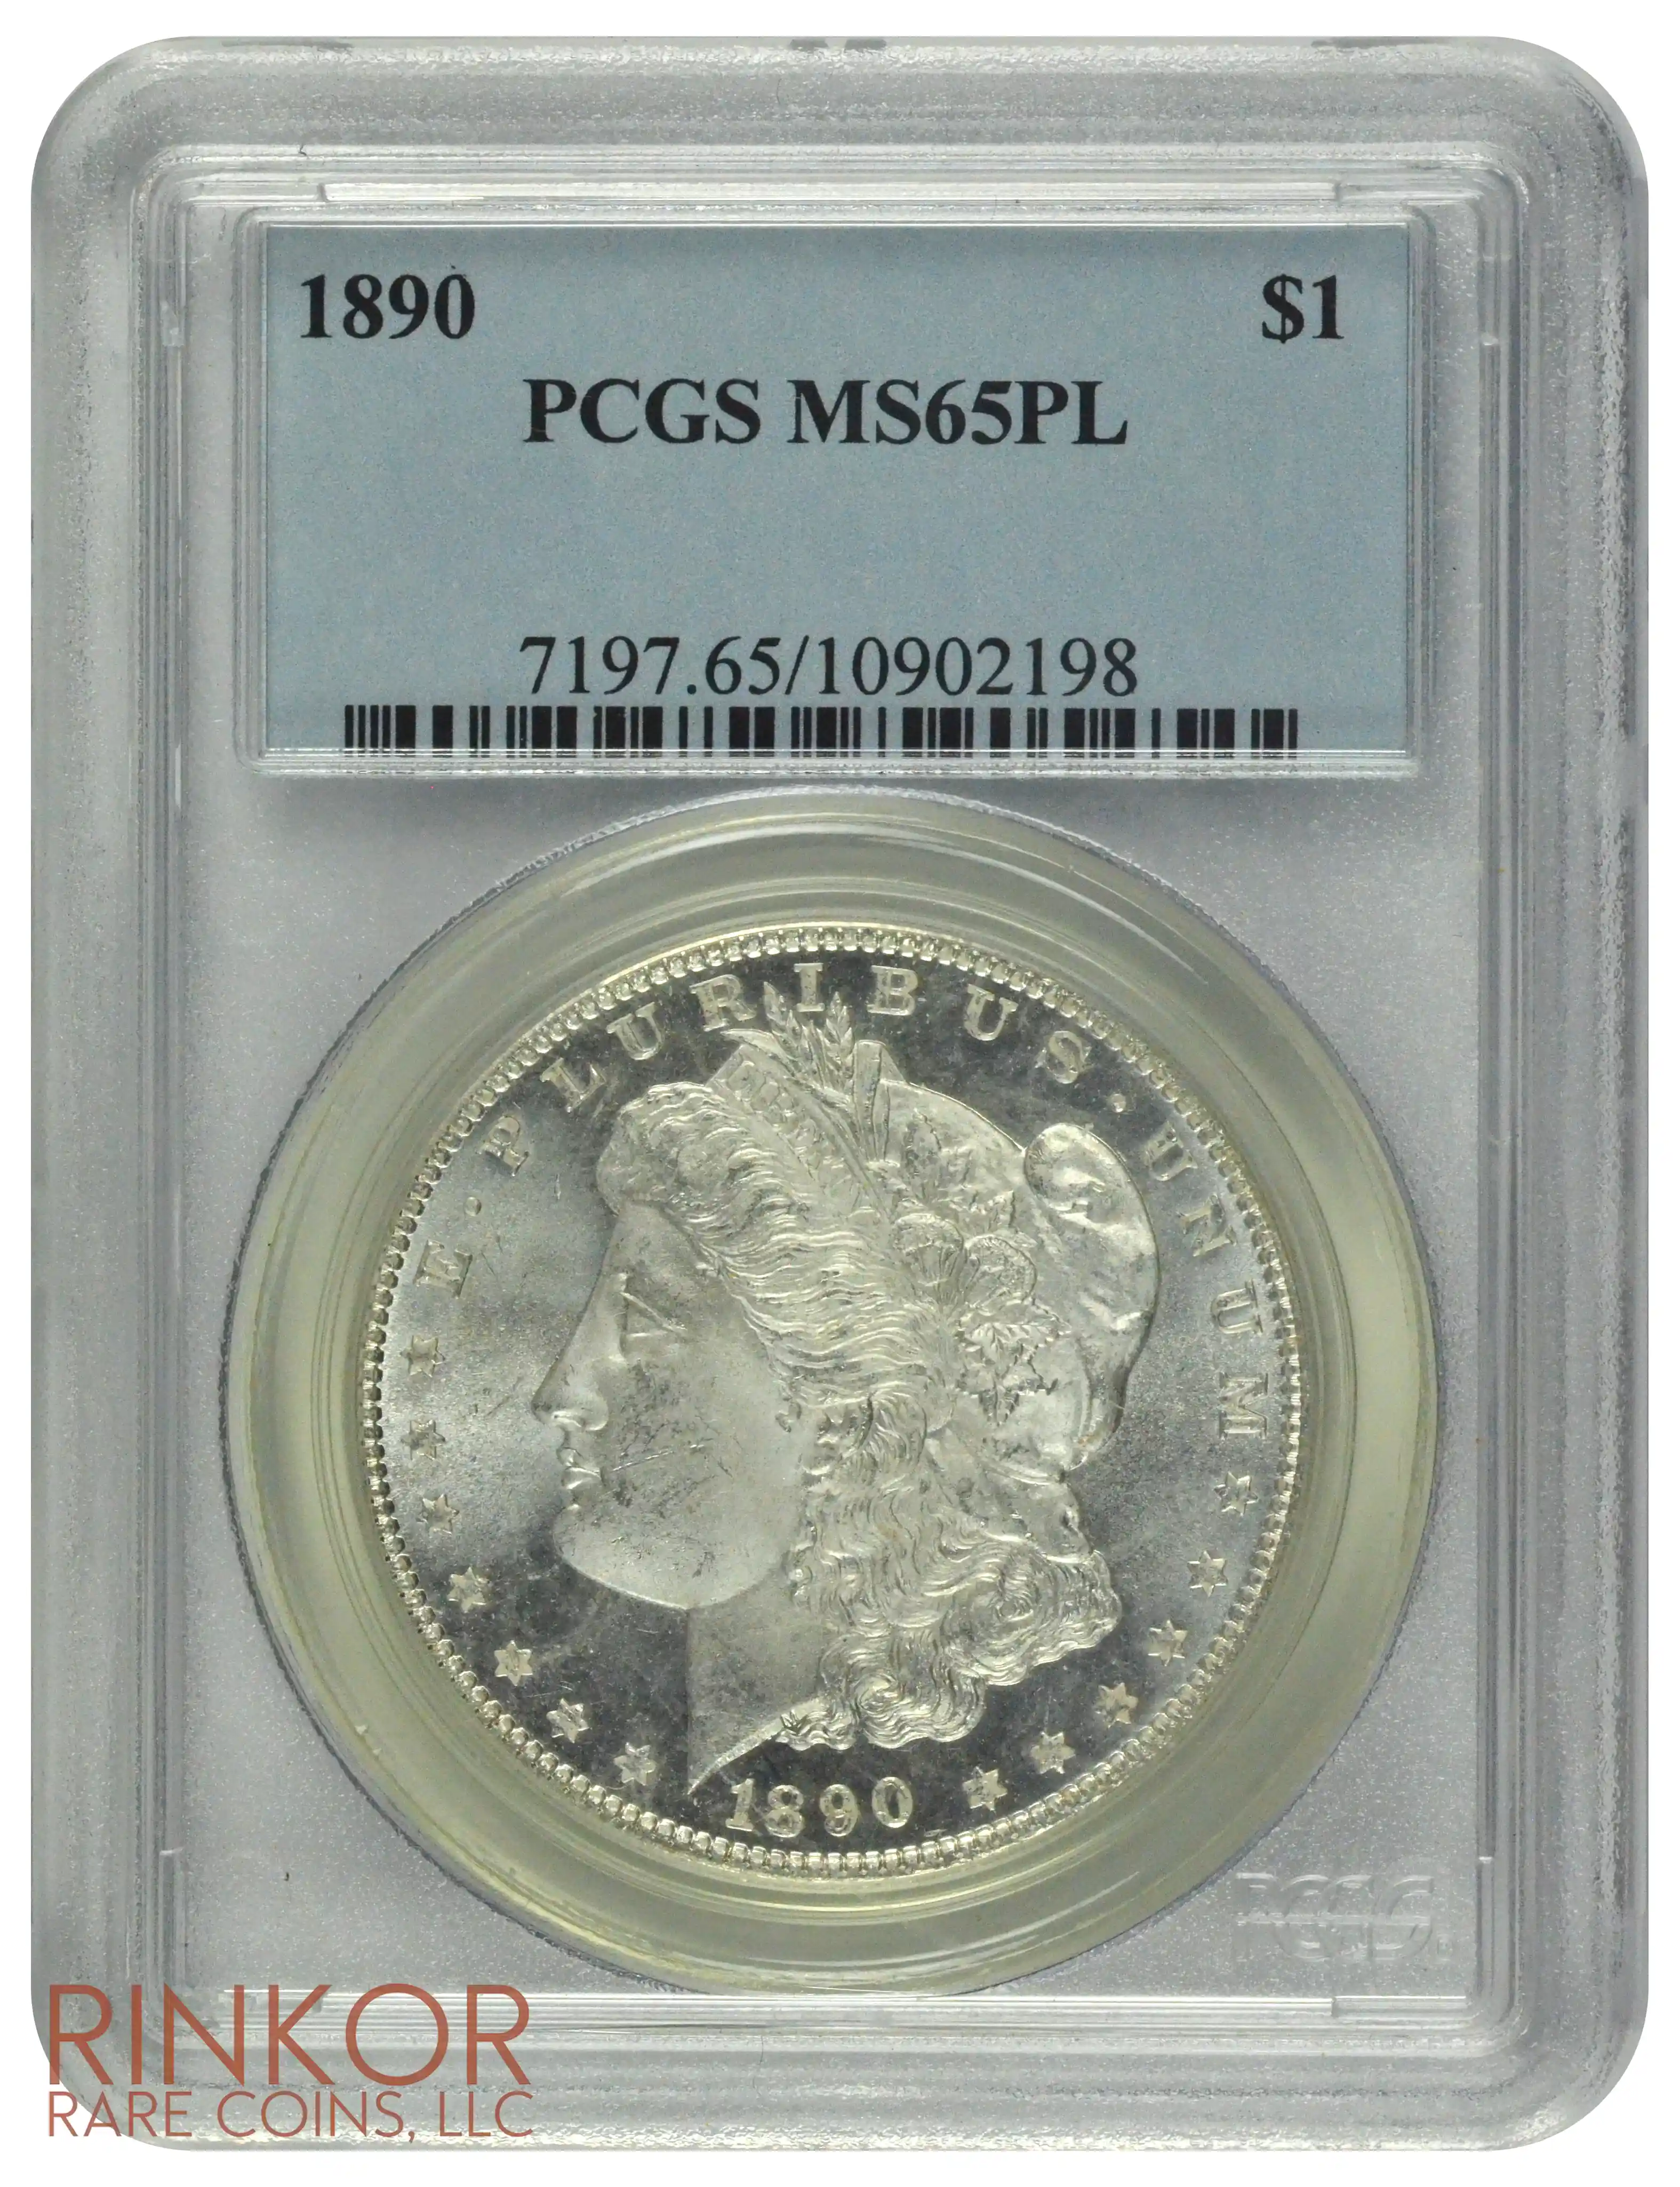 1890 $1 PCGS MS 65 PL